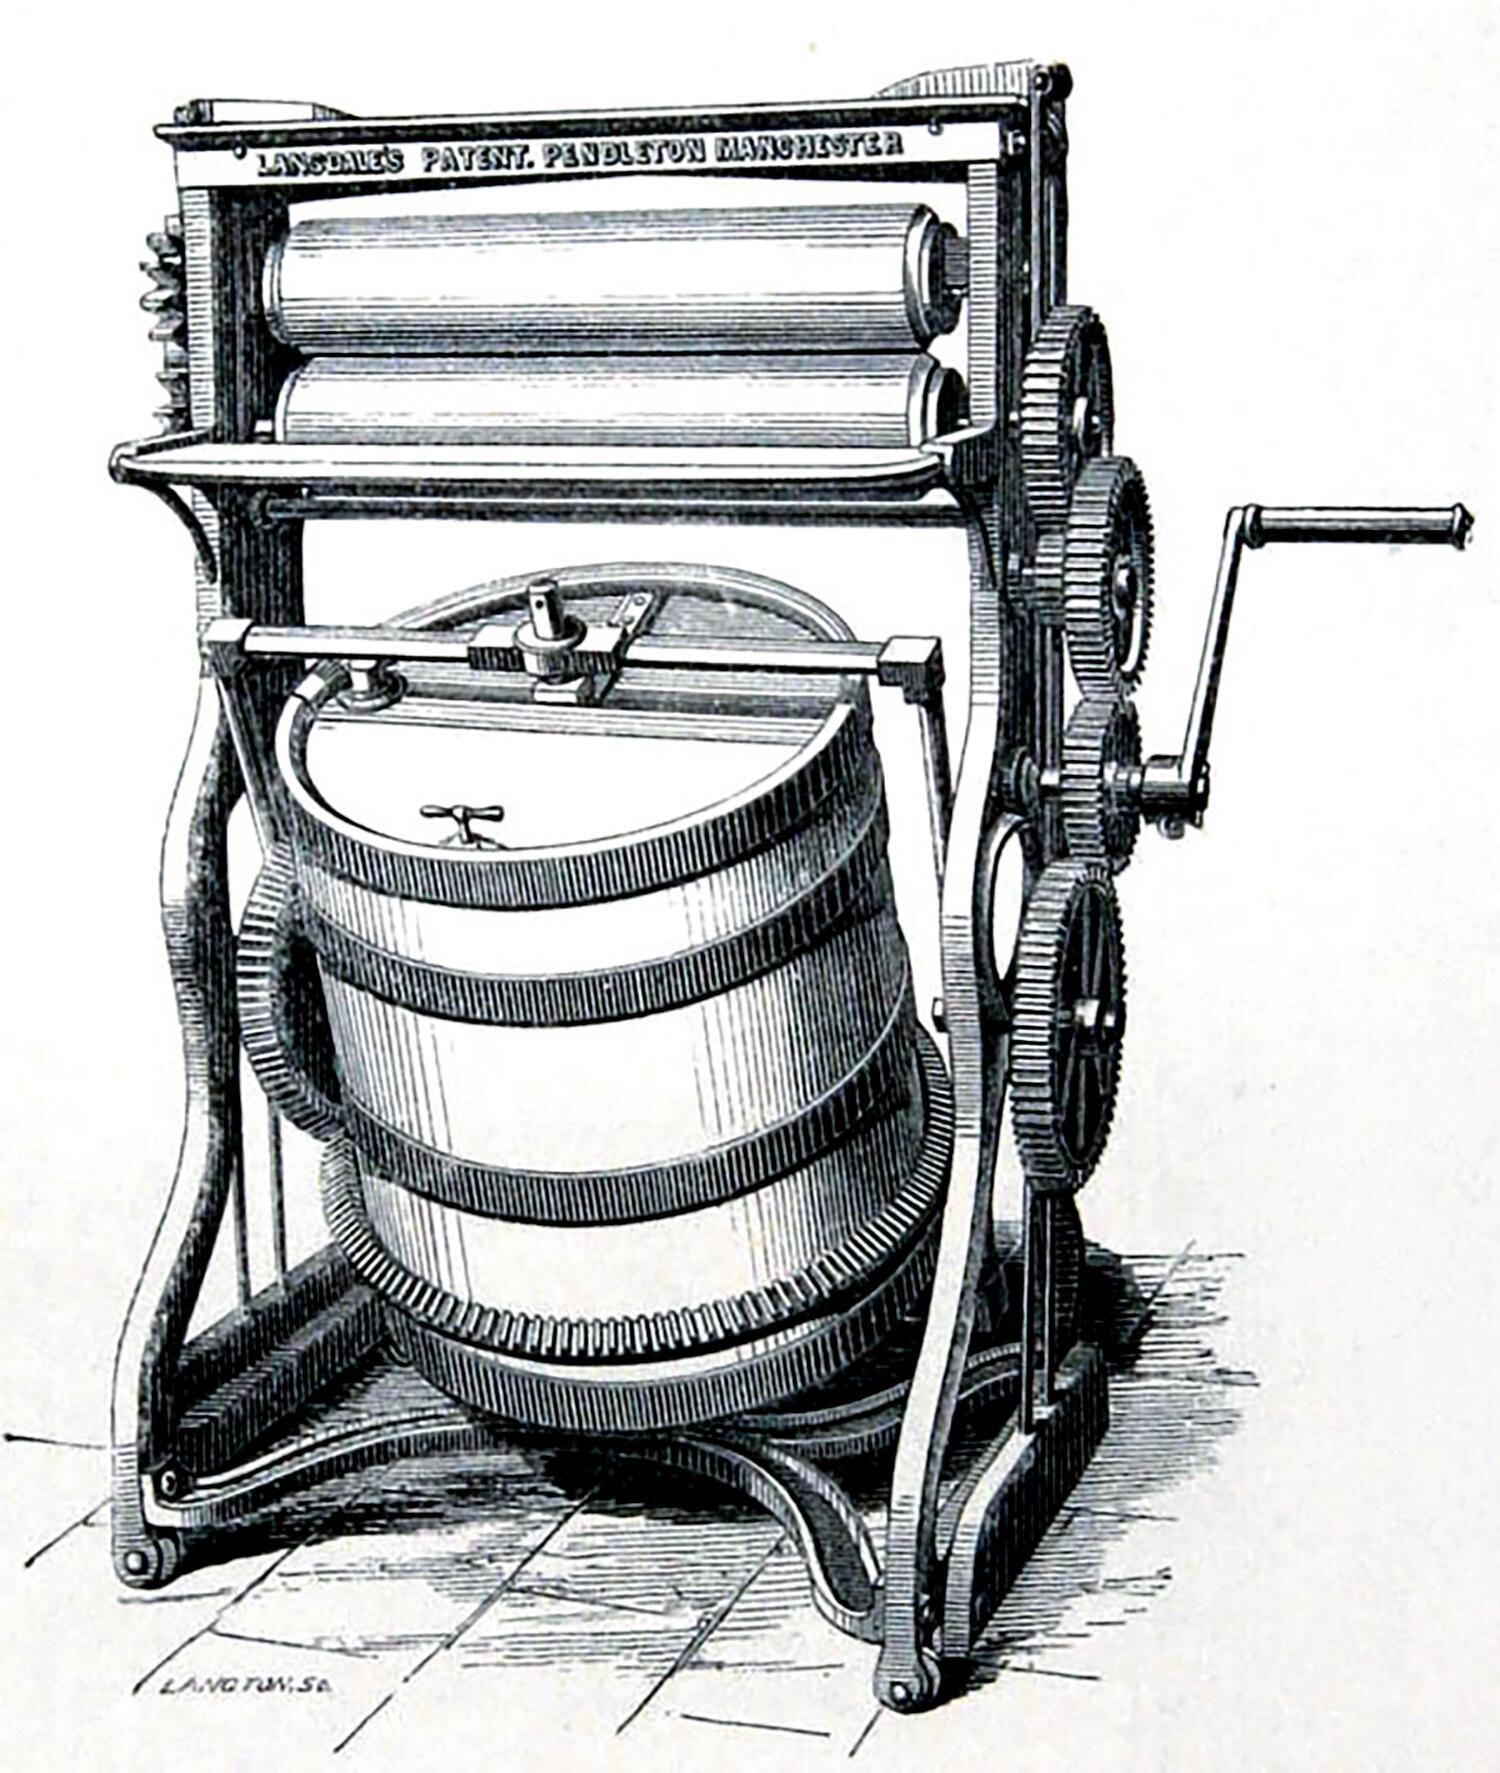 1862 Manchester Pendleton dan Richard Lansdale in patentli camasir makinesi